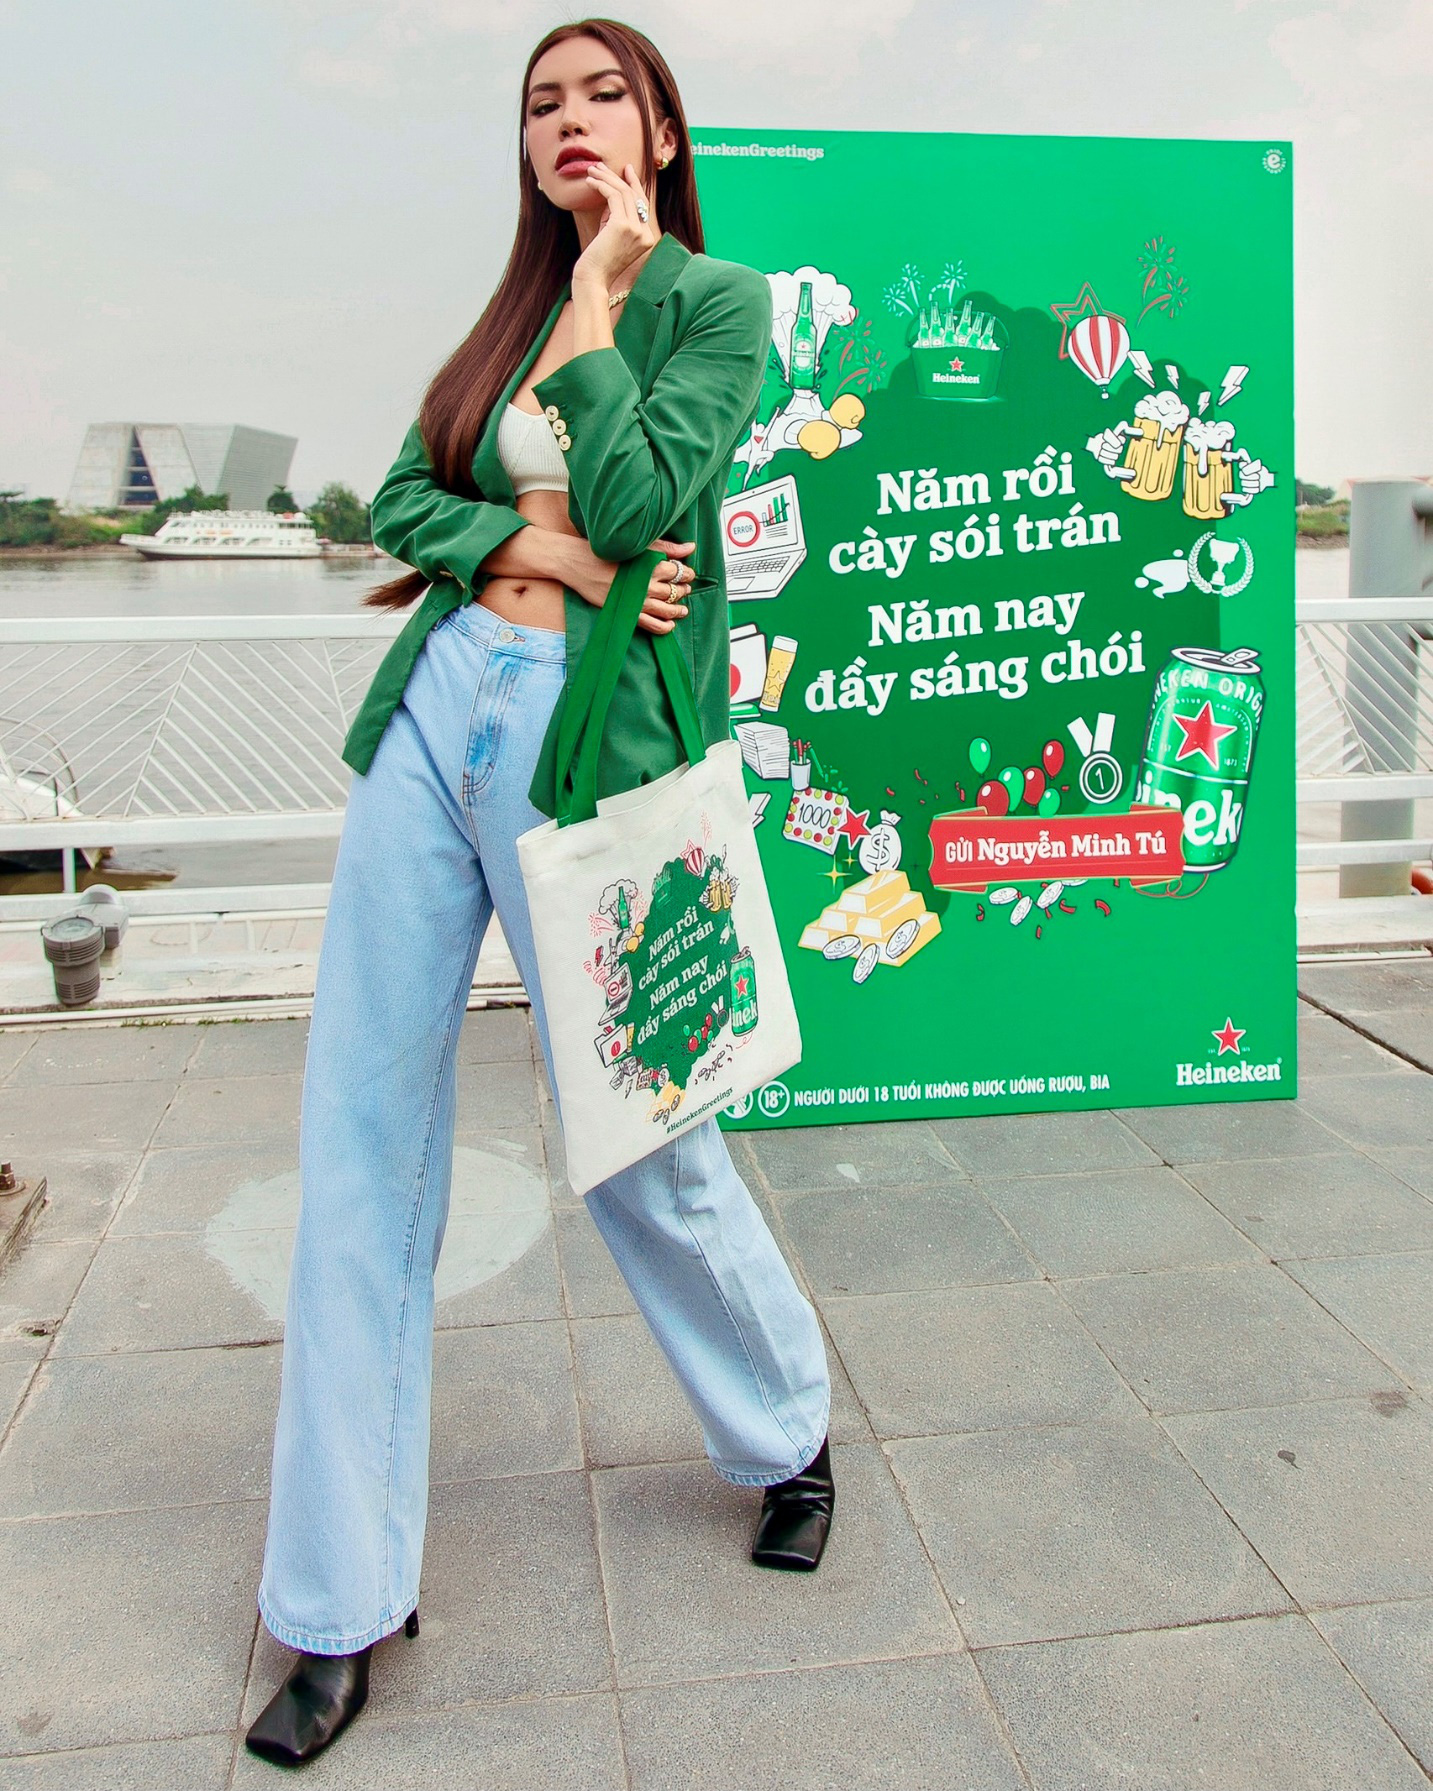 Dân mạng hào hứng “bắt trend” chúc mừng năm mới của Heineken - Ảnh 2.